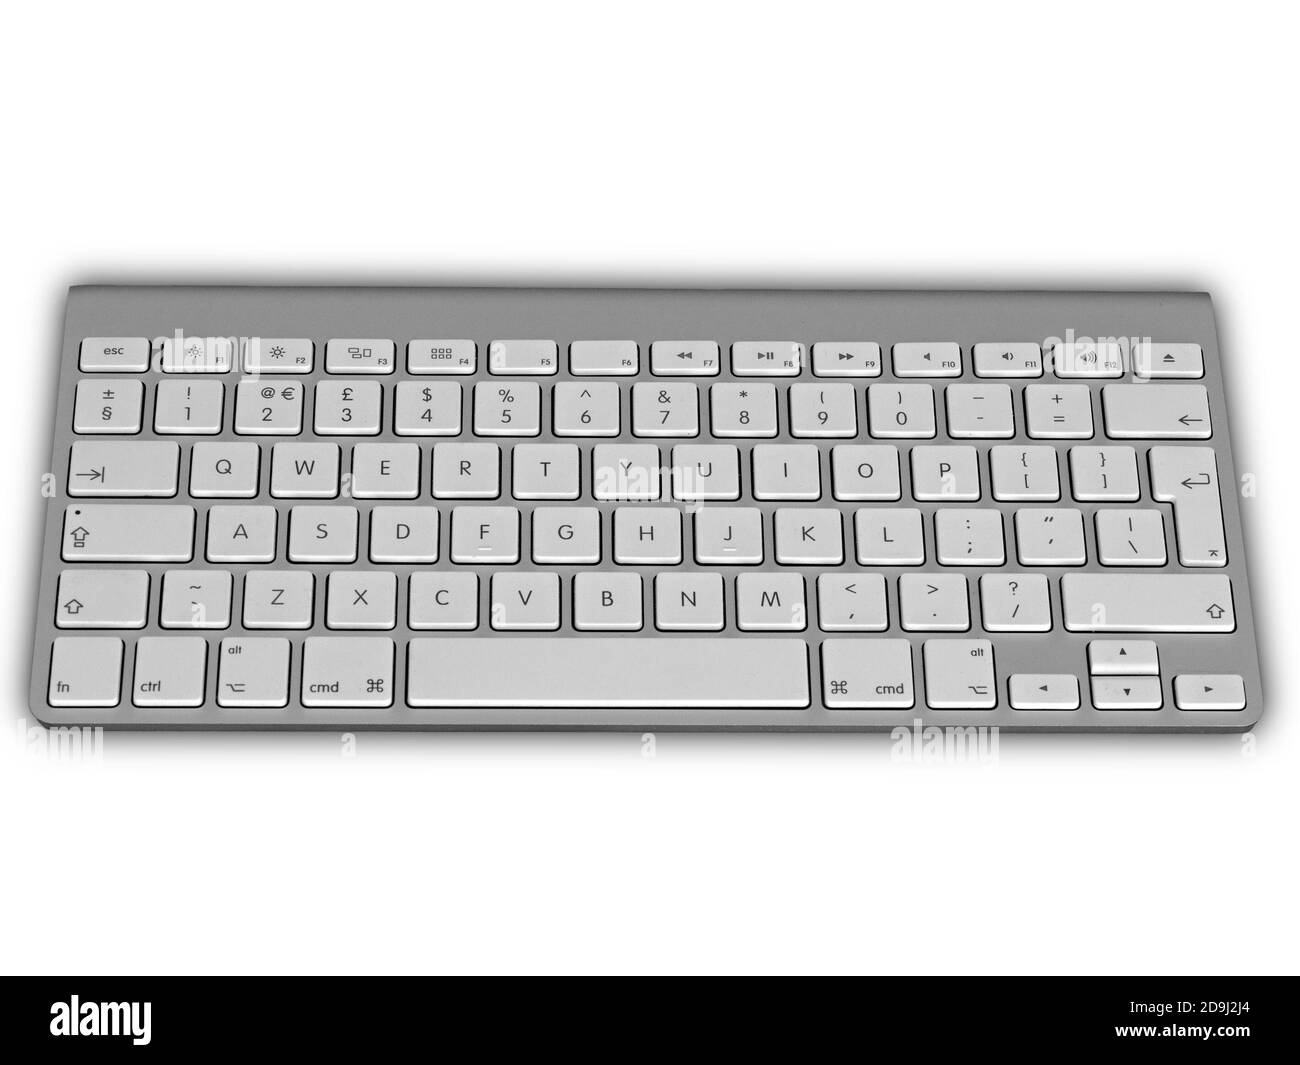 Apple Magic ordinateur Bluetooth sans fil UK clavier QWERTY anglais avec touches blanches et corps en métal en aluminium anodisé argenté sur fond blanc Banque D'Images